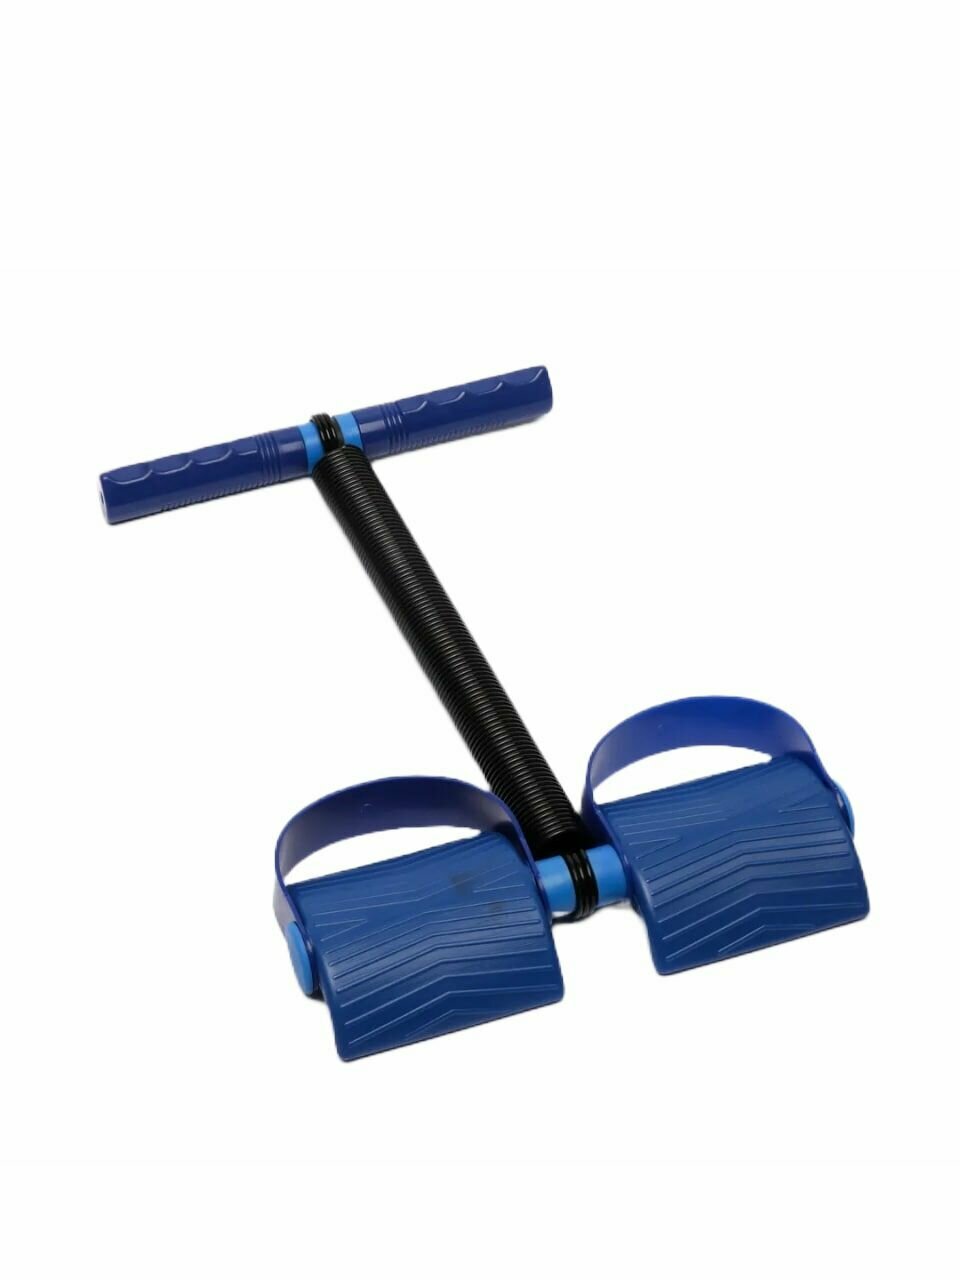 Эспандер ножной для фитнес тренировок, пресса и ног, синий